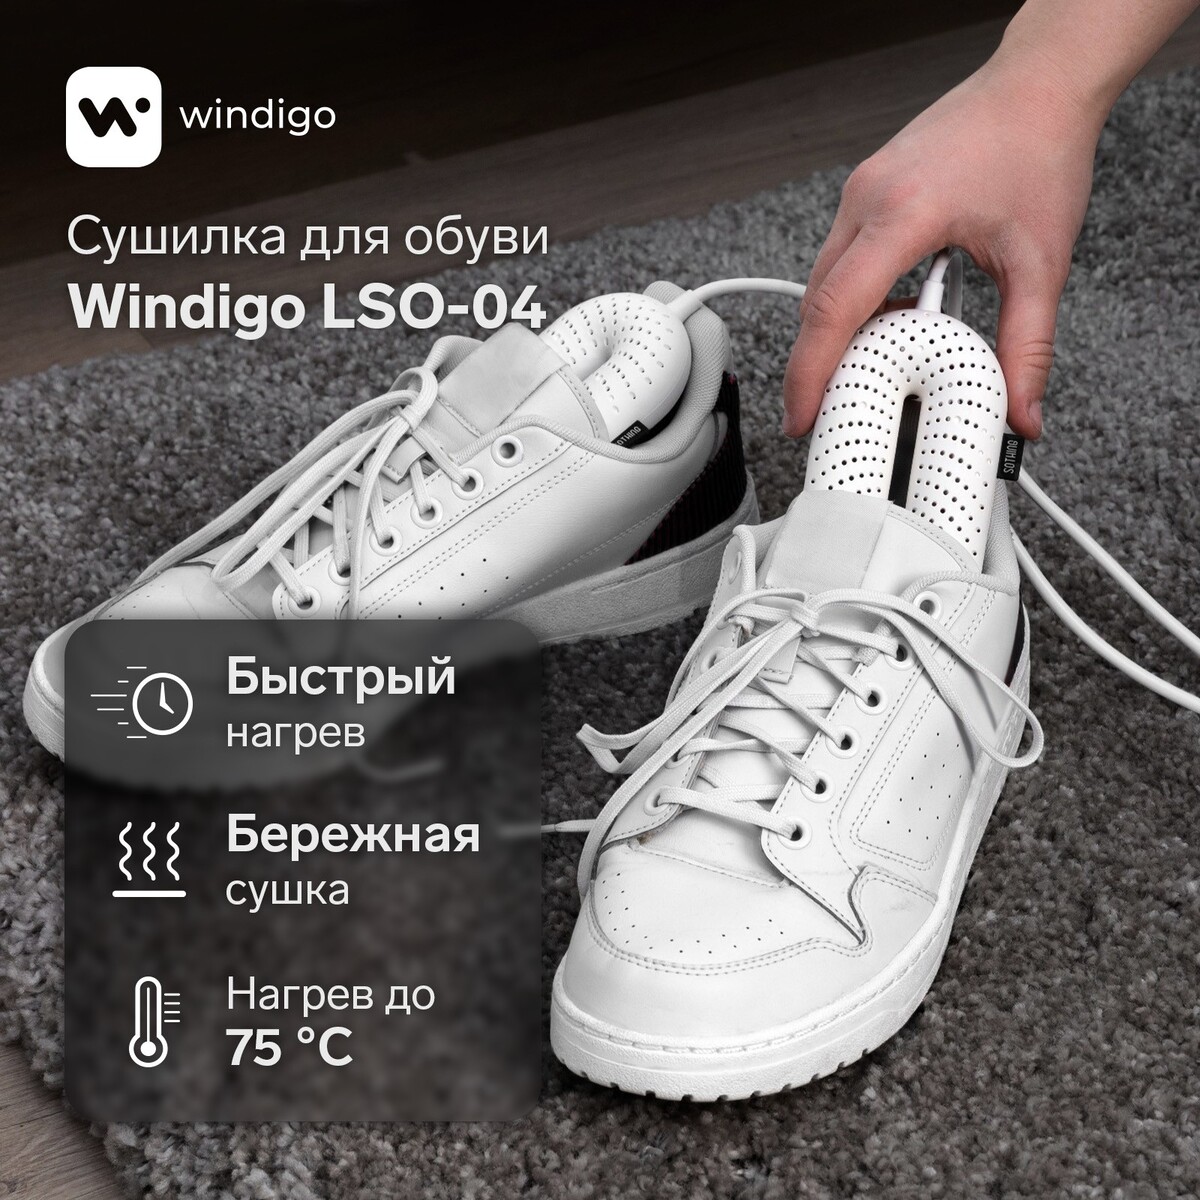 Сушилка для обуви windigo lso-04, 17 см, 20 вт, индикатор, белая сушилка для обуви windigo lso 04 17 см 20 вт индикатор синяя